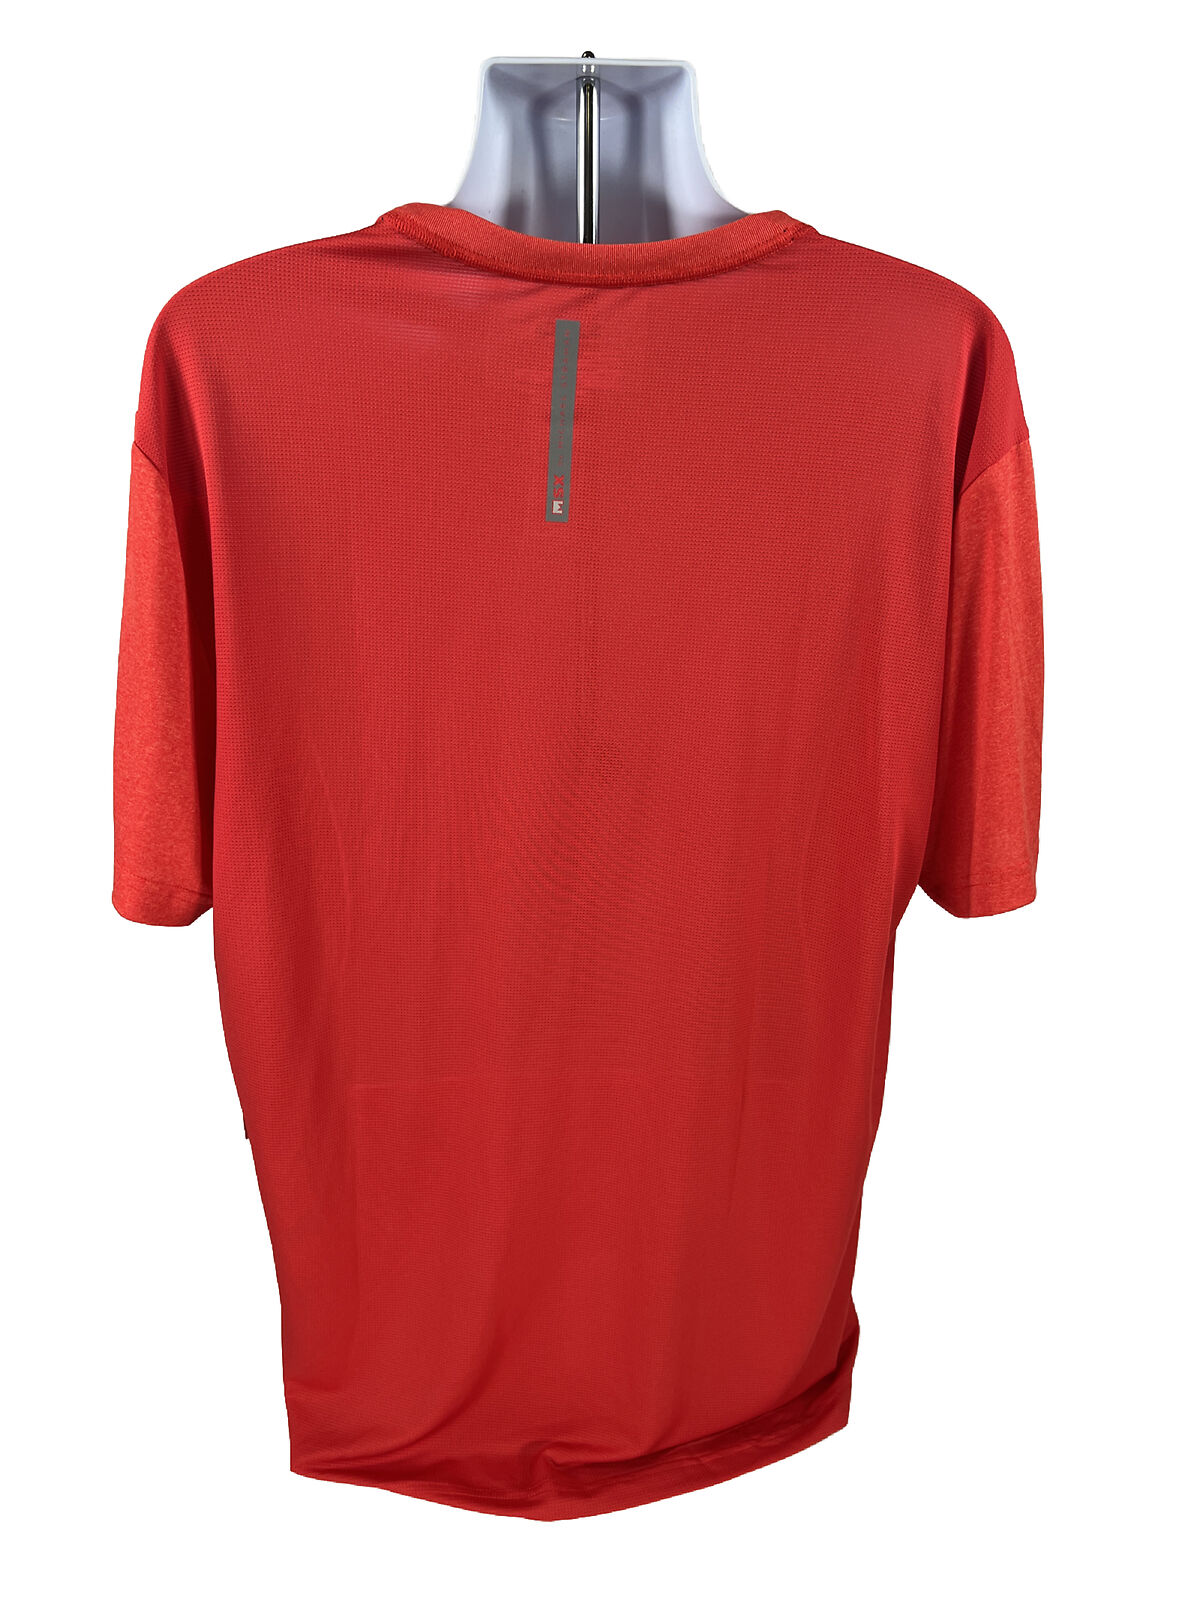 NEW MSX Michael Strahan Men's Red Short Sleeve Athletic Shirt - Tall XLT